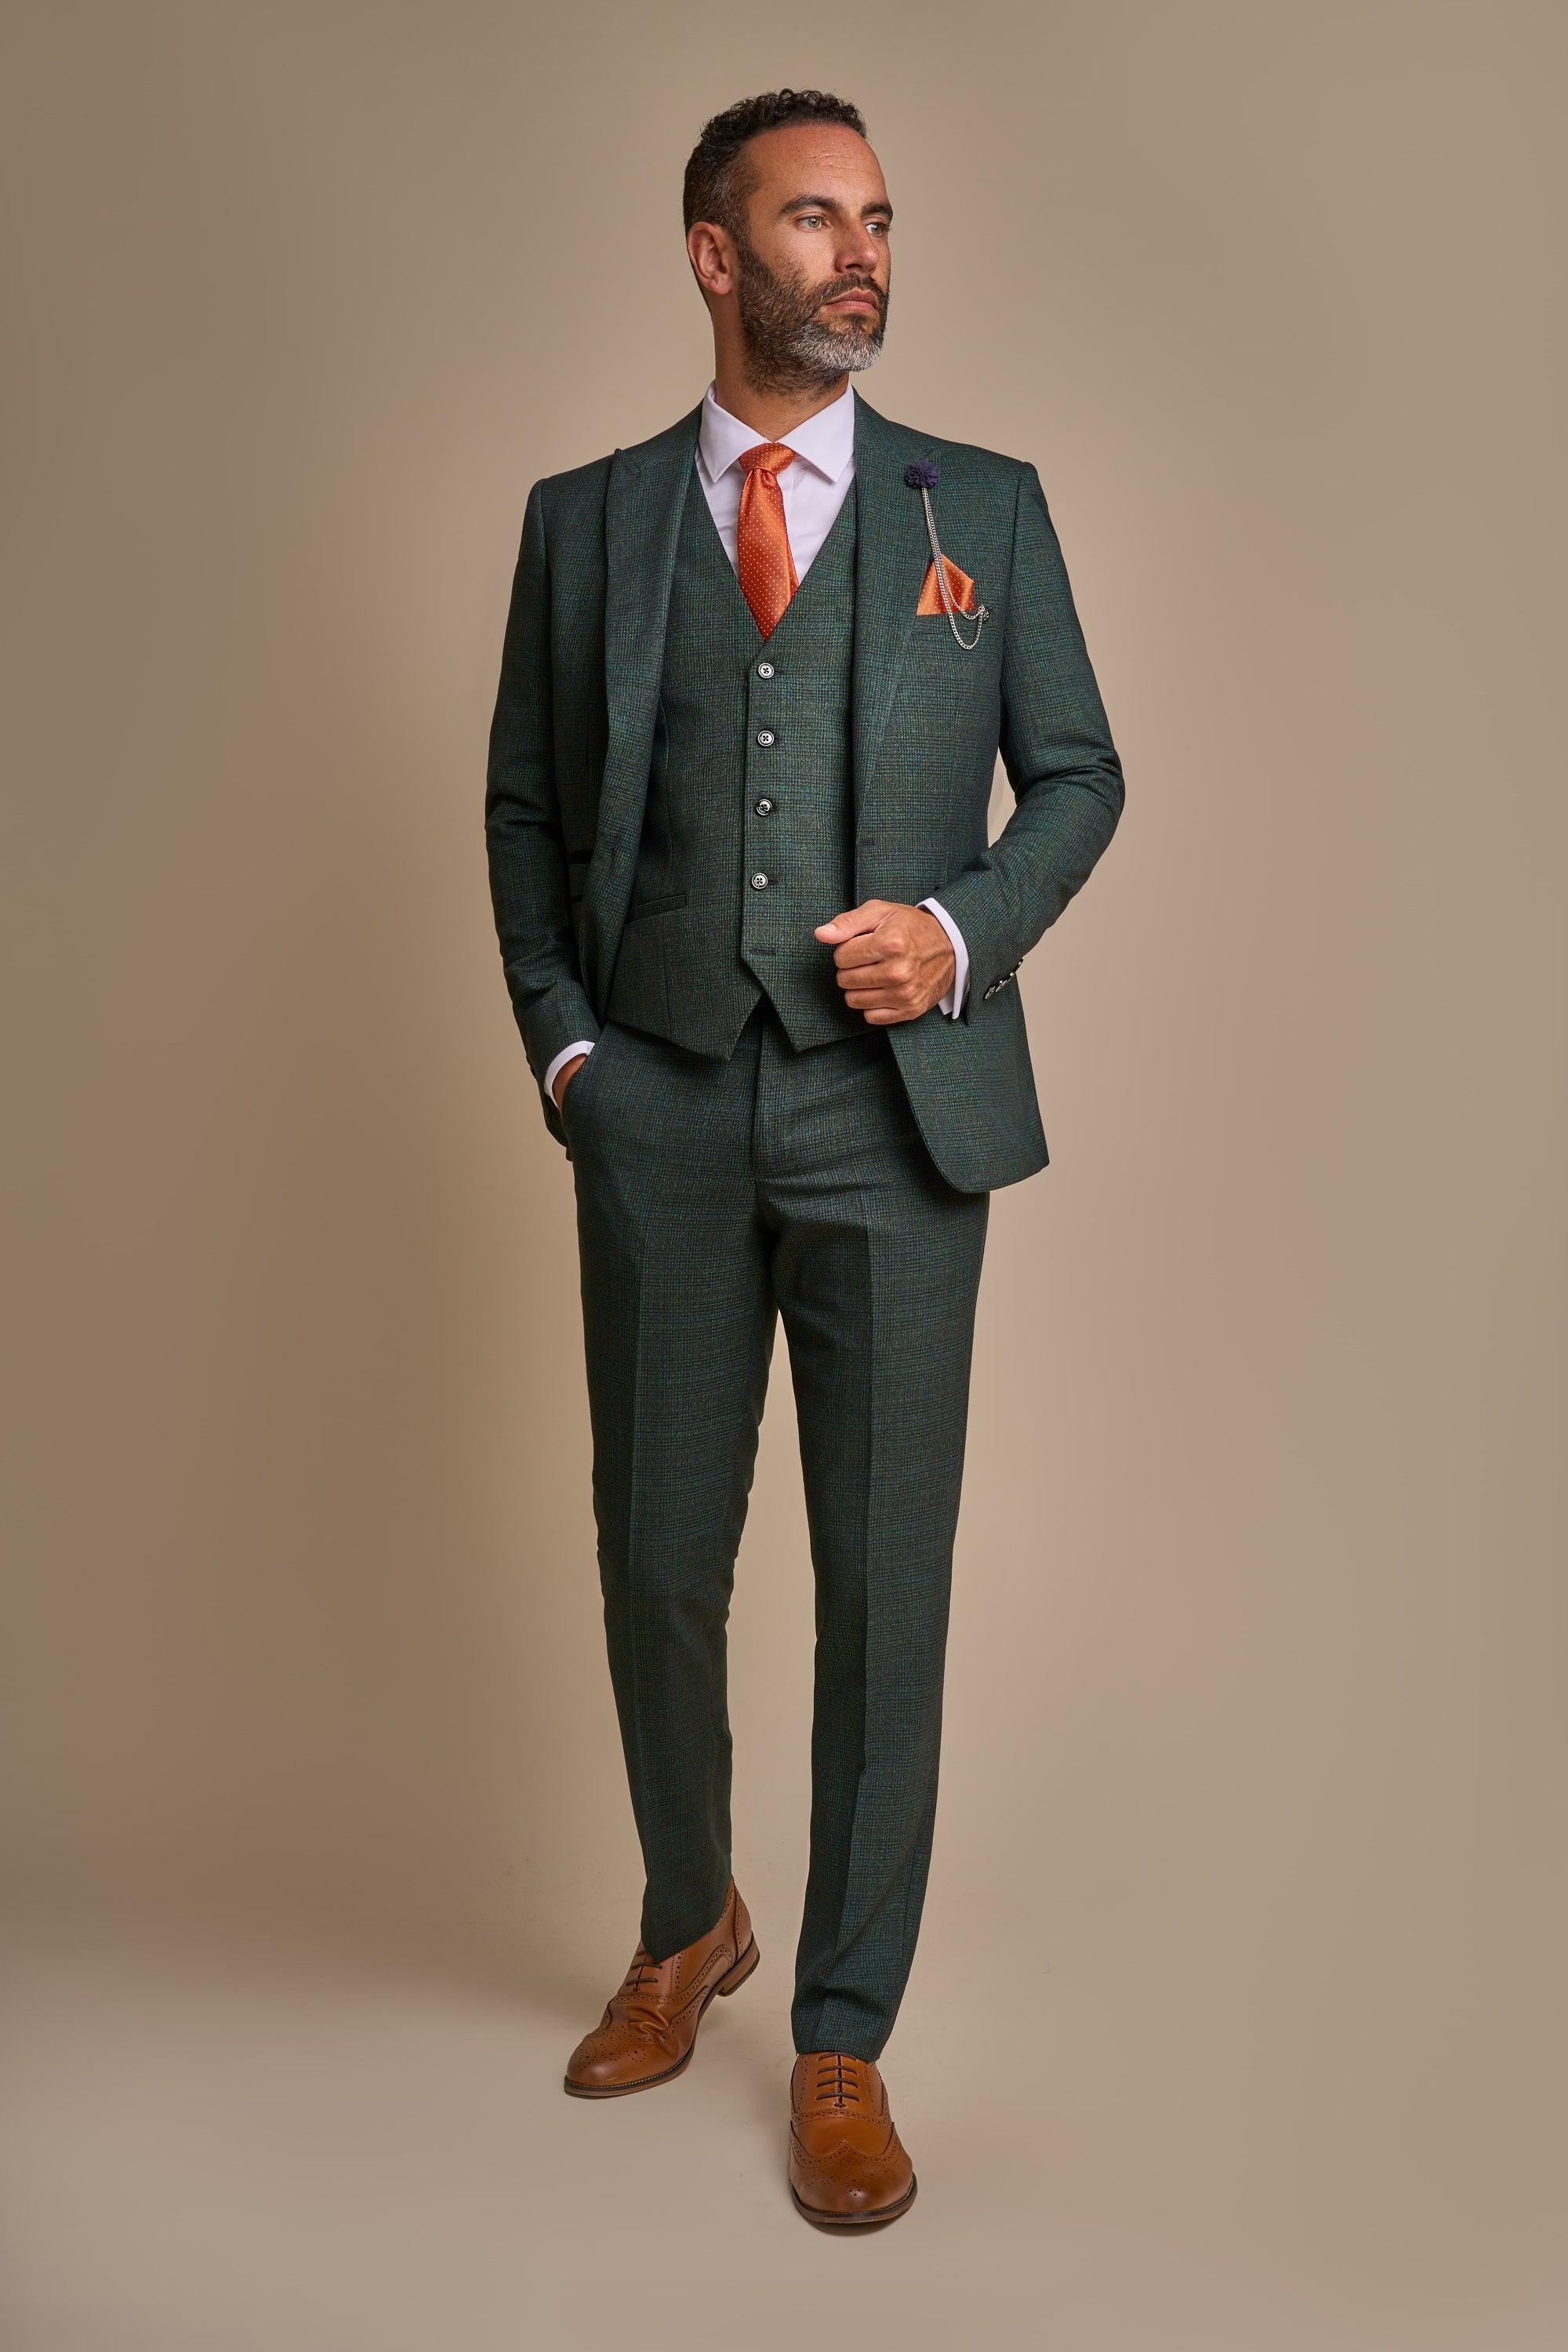 Caridi Olive Suit Front